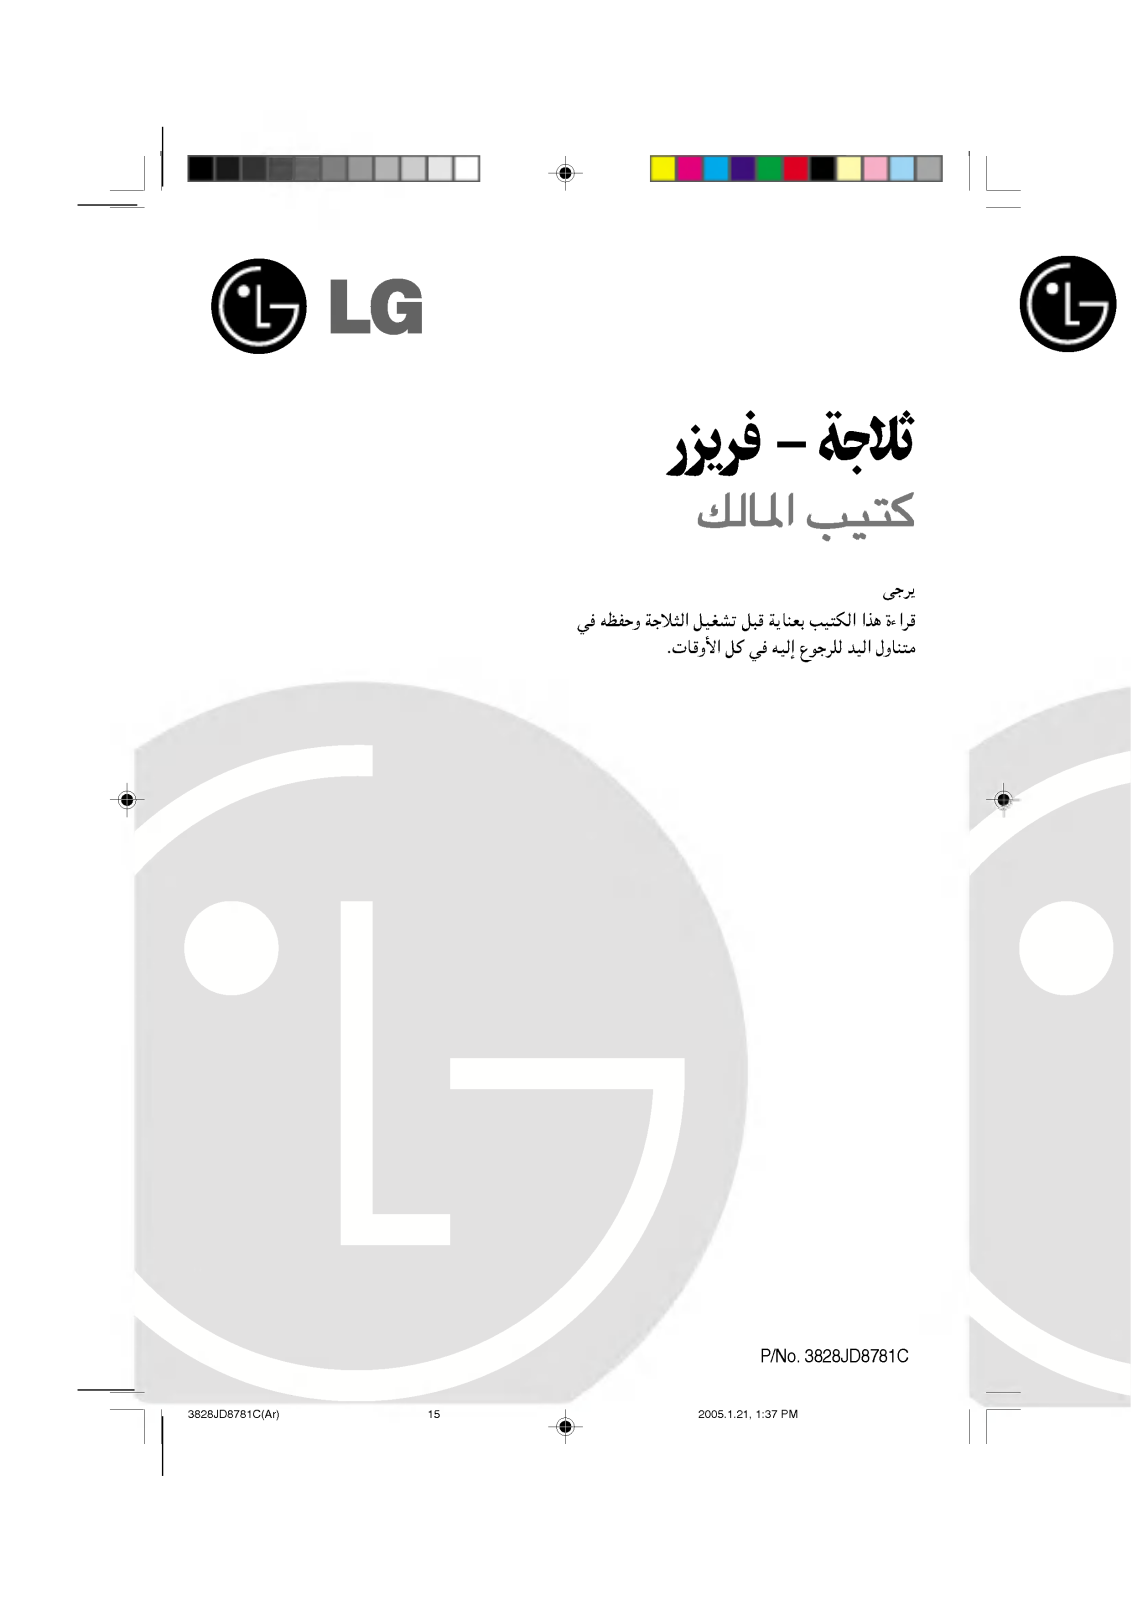 LG GR-S652QLQ Owner’s Manual